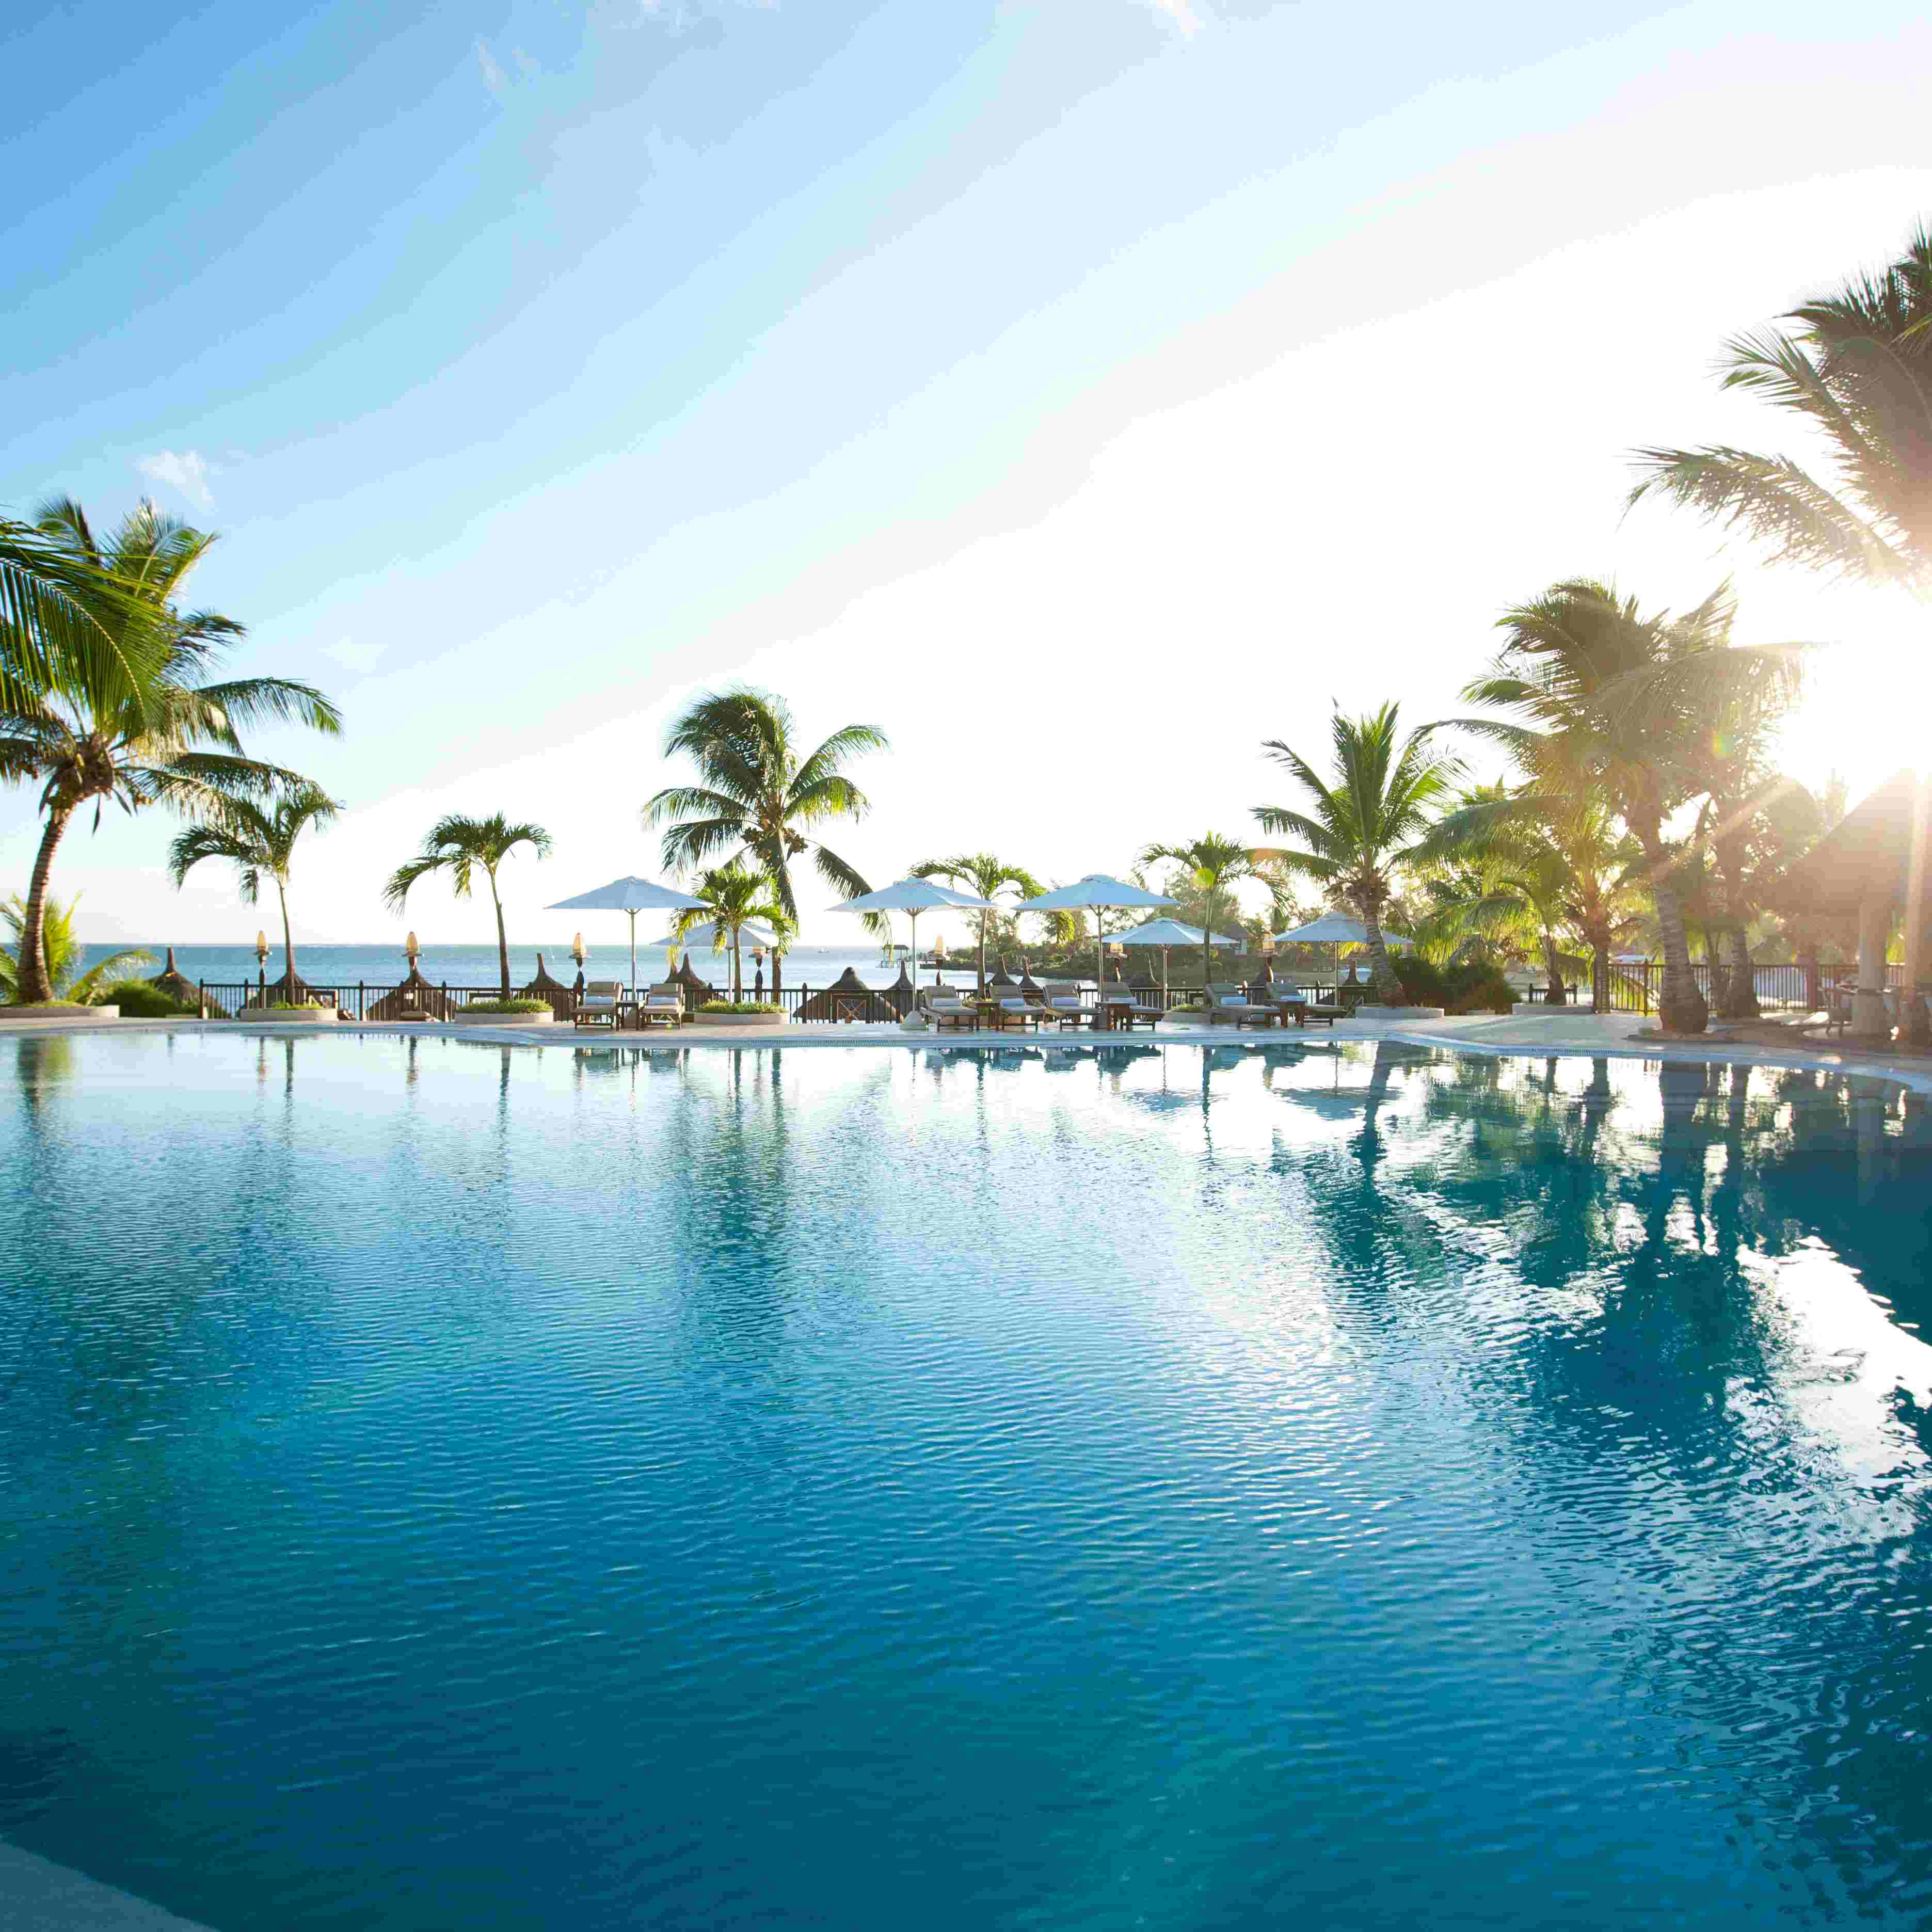 毛里求斯香提莫里斯-尼拉度假村Shanti Maurice – A Nira Resort – 爱岛人 海岛旅行专家